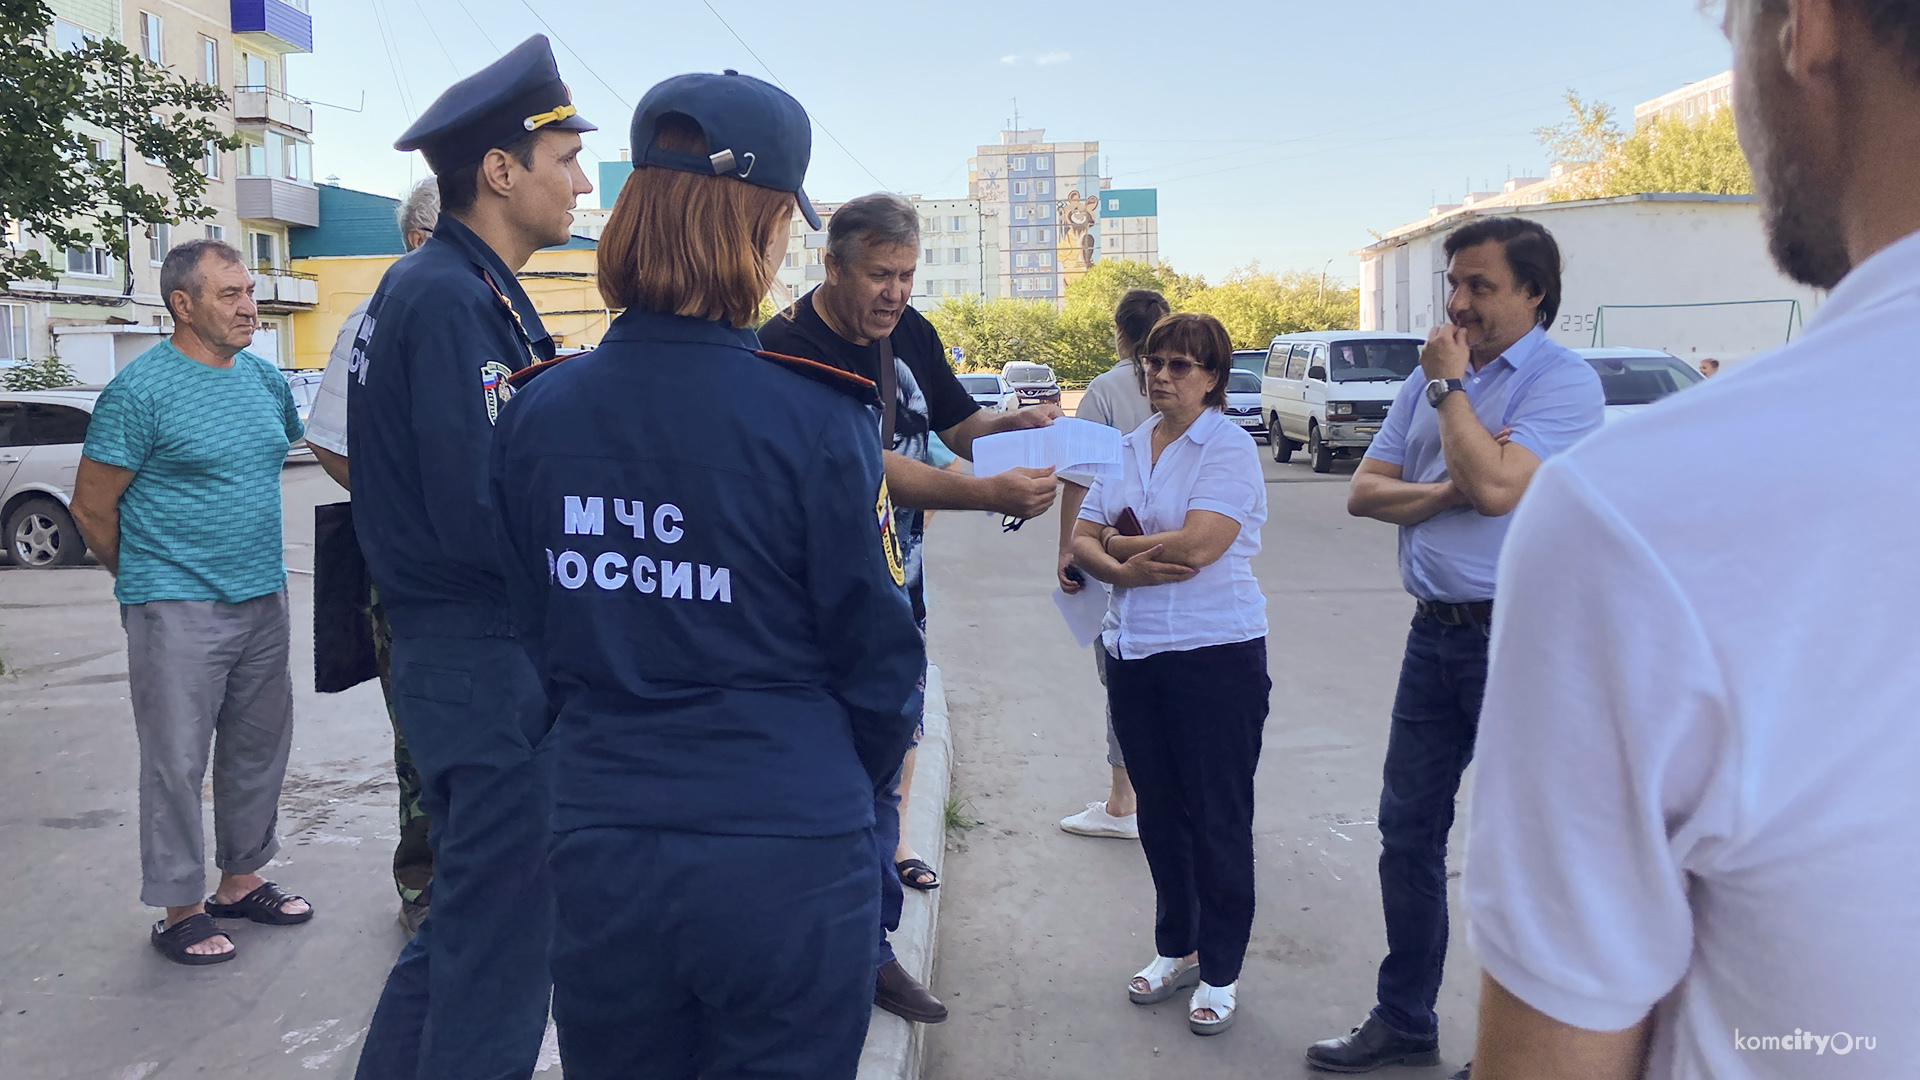 Альтернативу бетонным блокам искали на встрече жильцов оживлённого двора, пожнадзора и главы Комсомольска-на-Амуре